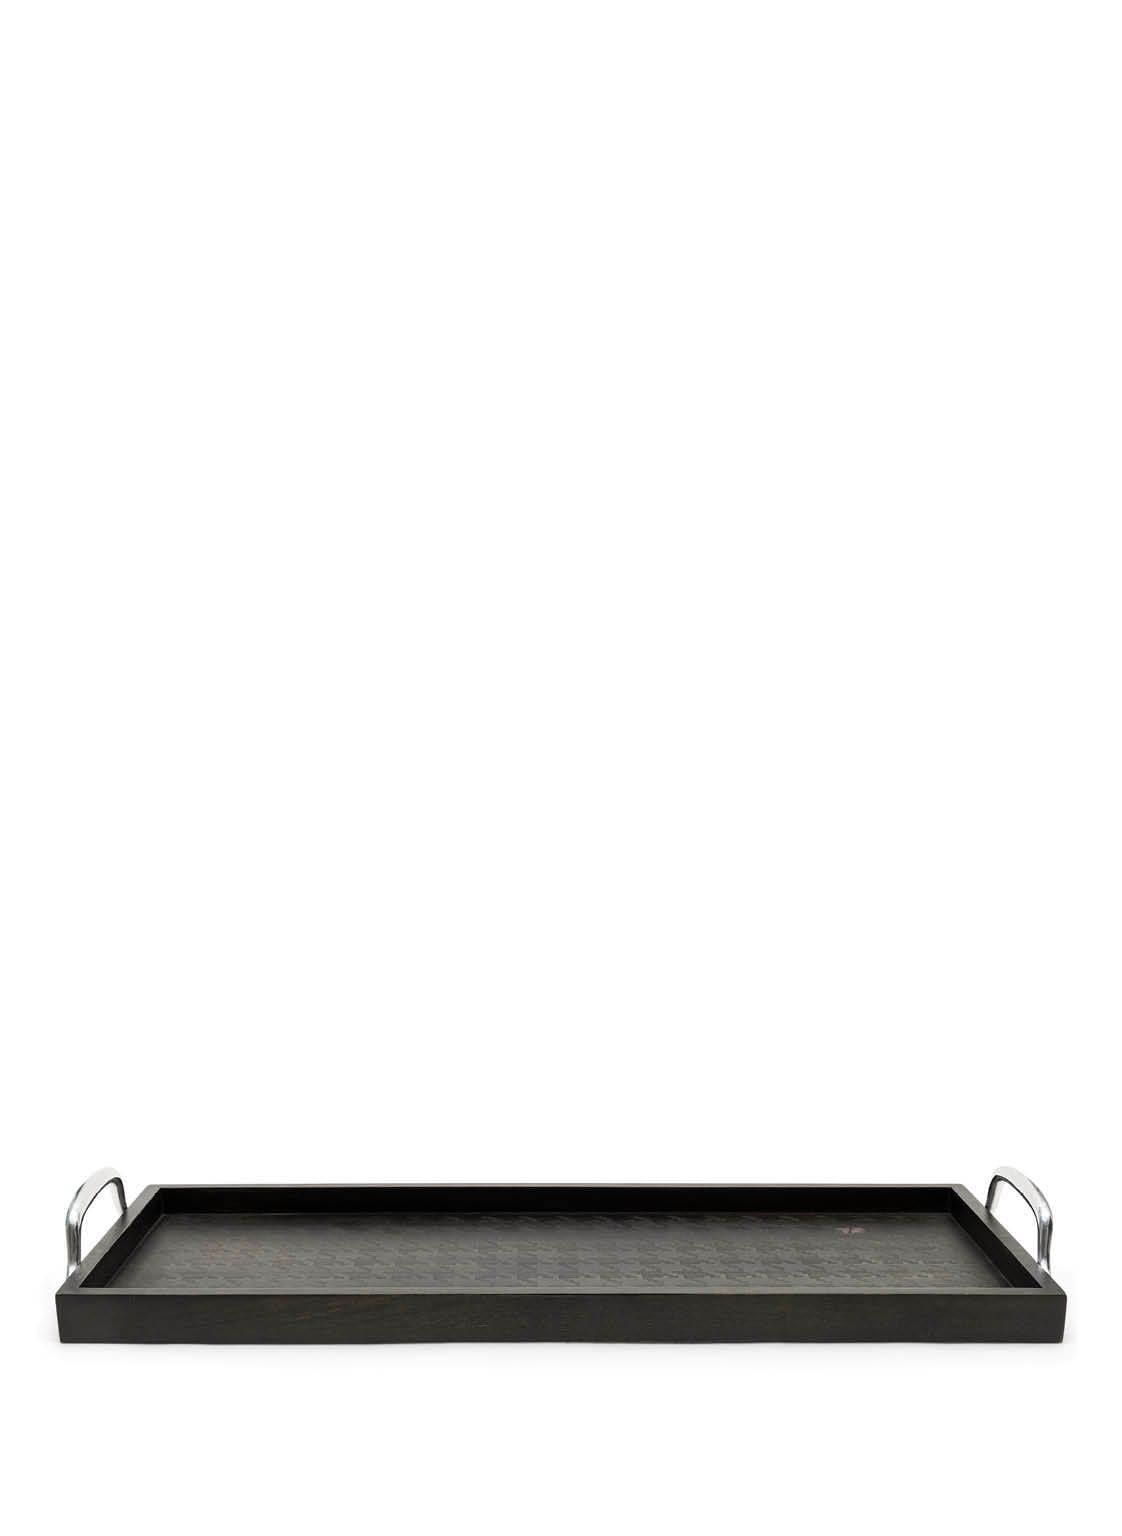 Rivièra Maison Tablett Pied-De-Poule 80X30 schwarz